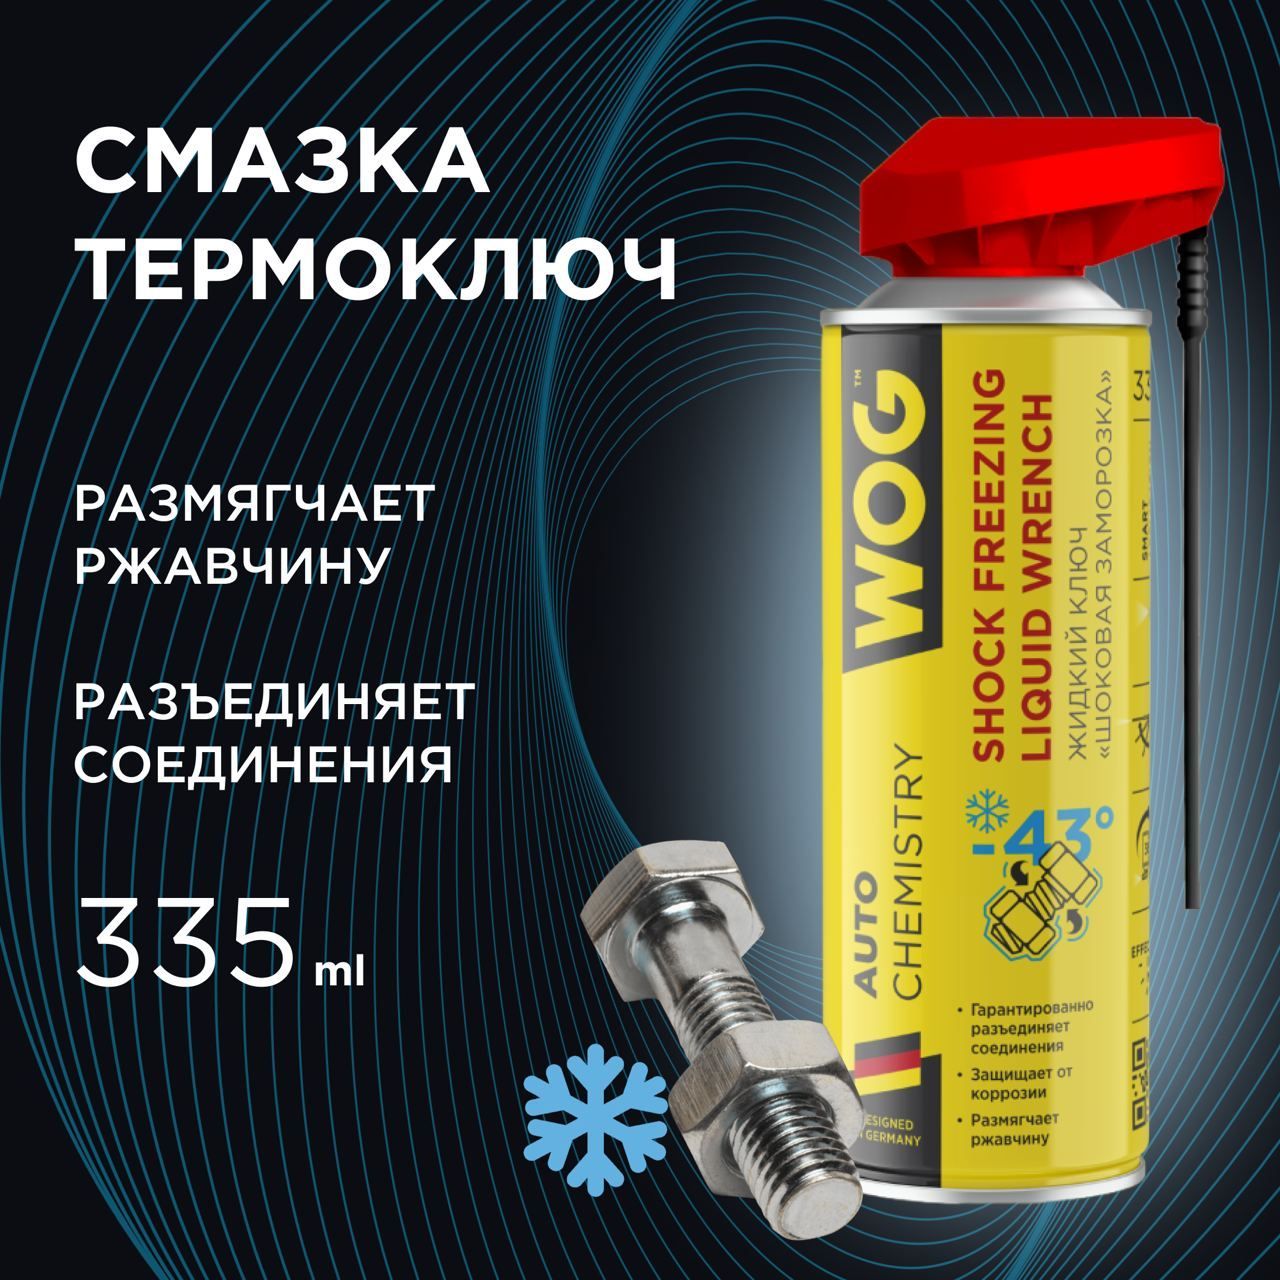 Жидкийключ(термоключ)проникающаясмазкааэрозольнаясшоковойзаморозкой(-43С)дляприкипевшихсоединенийспрофессиональнымраспылителем2в1WOGWGC0394,335мл